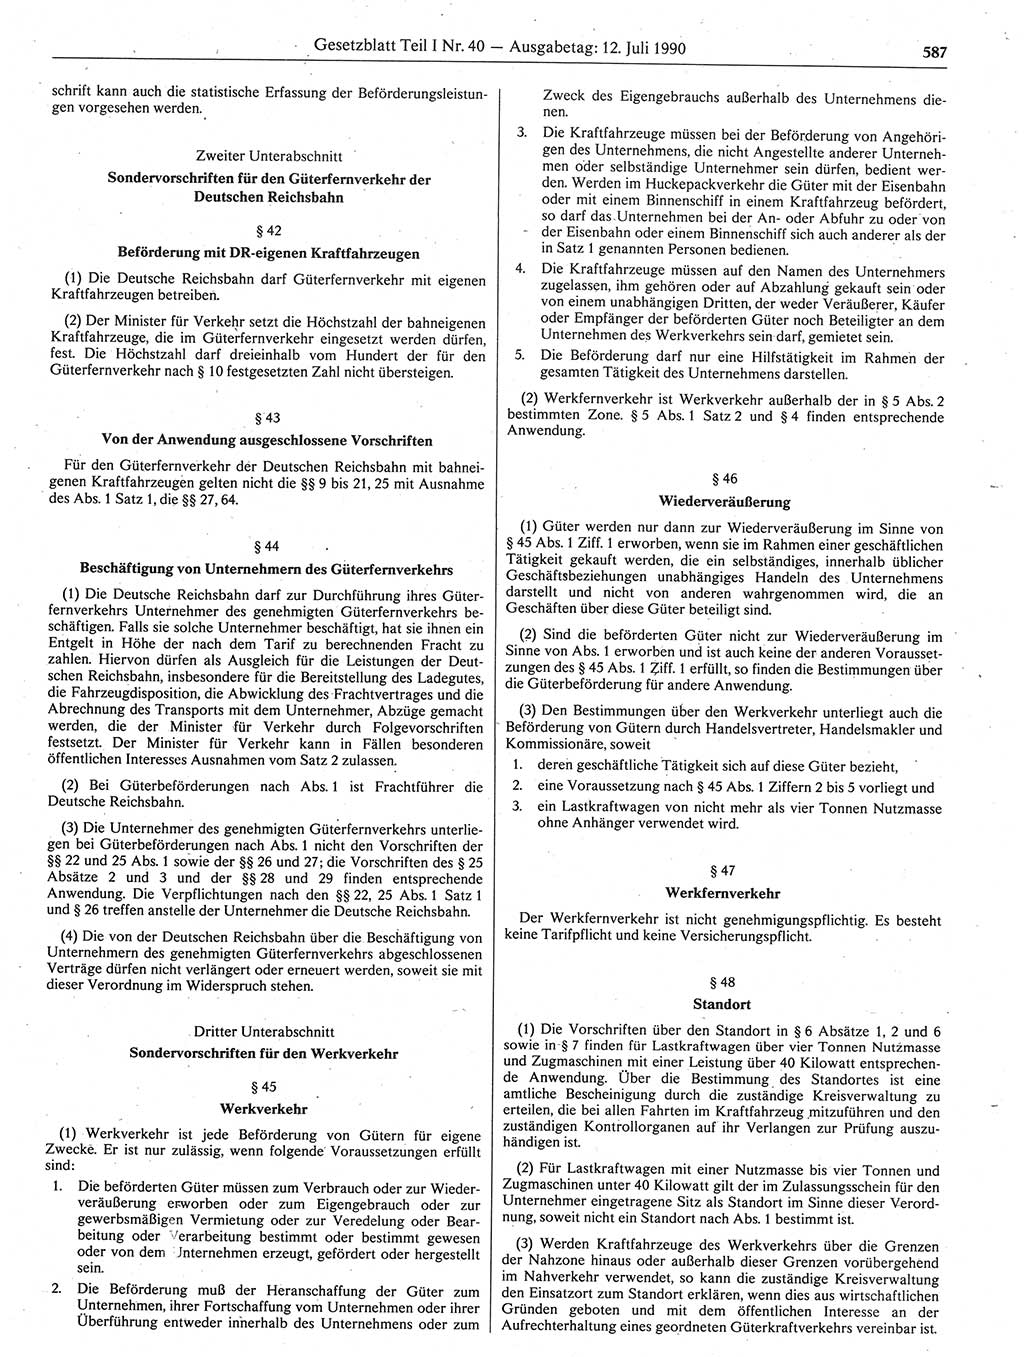 Gesetzblatt (GBl.) der Deutschen Demokratischen Republik (DDR) Teil Ⅰ 1990, Seite 587 (GBl. DDR Ⅰ 1990, S. 587)